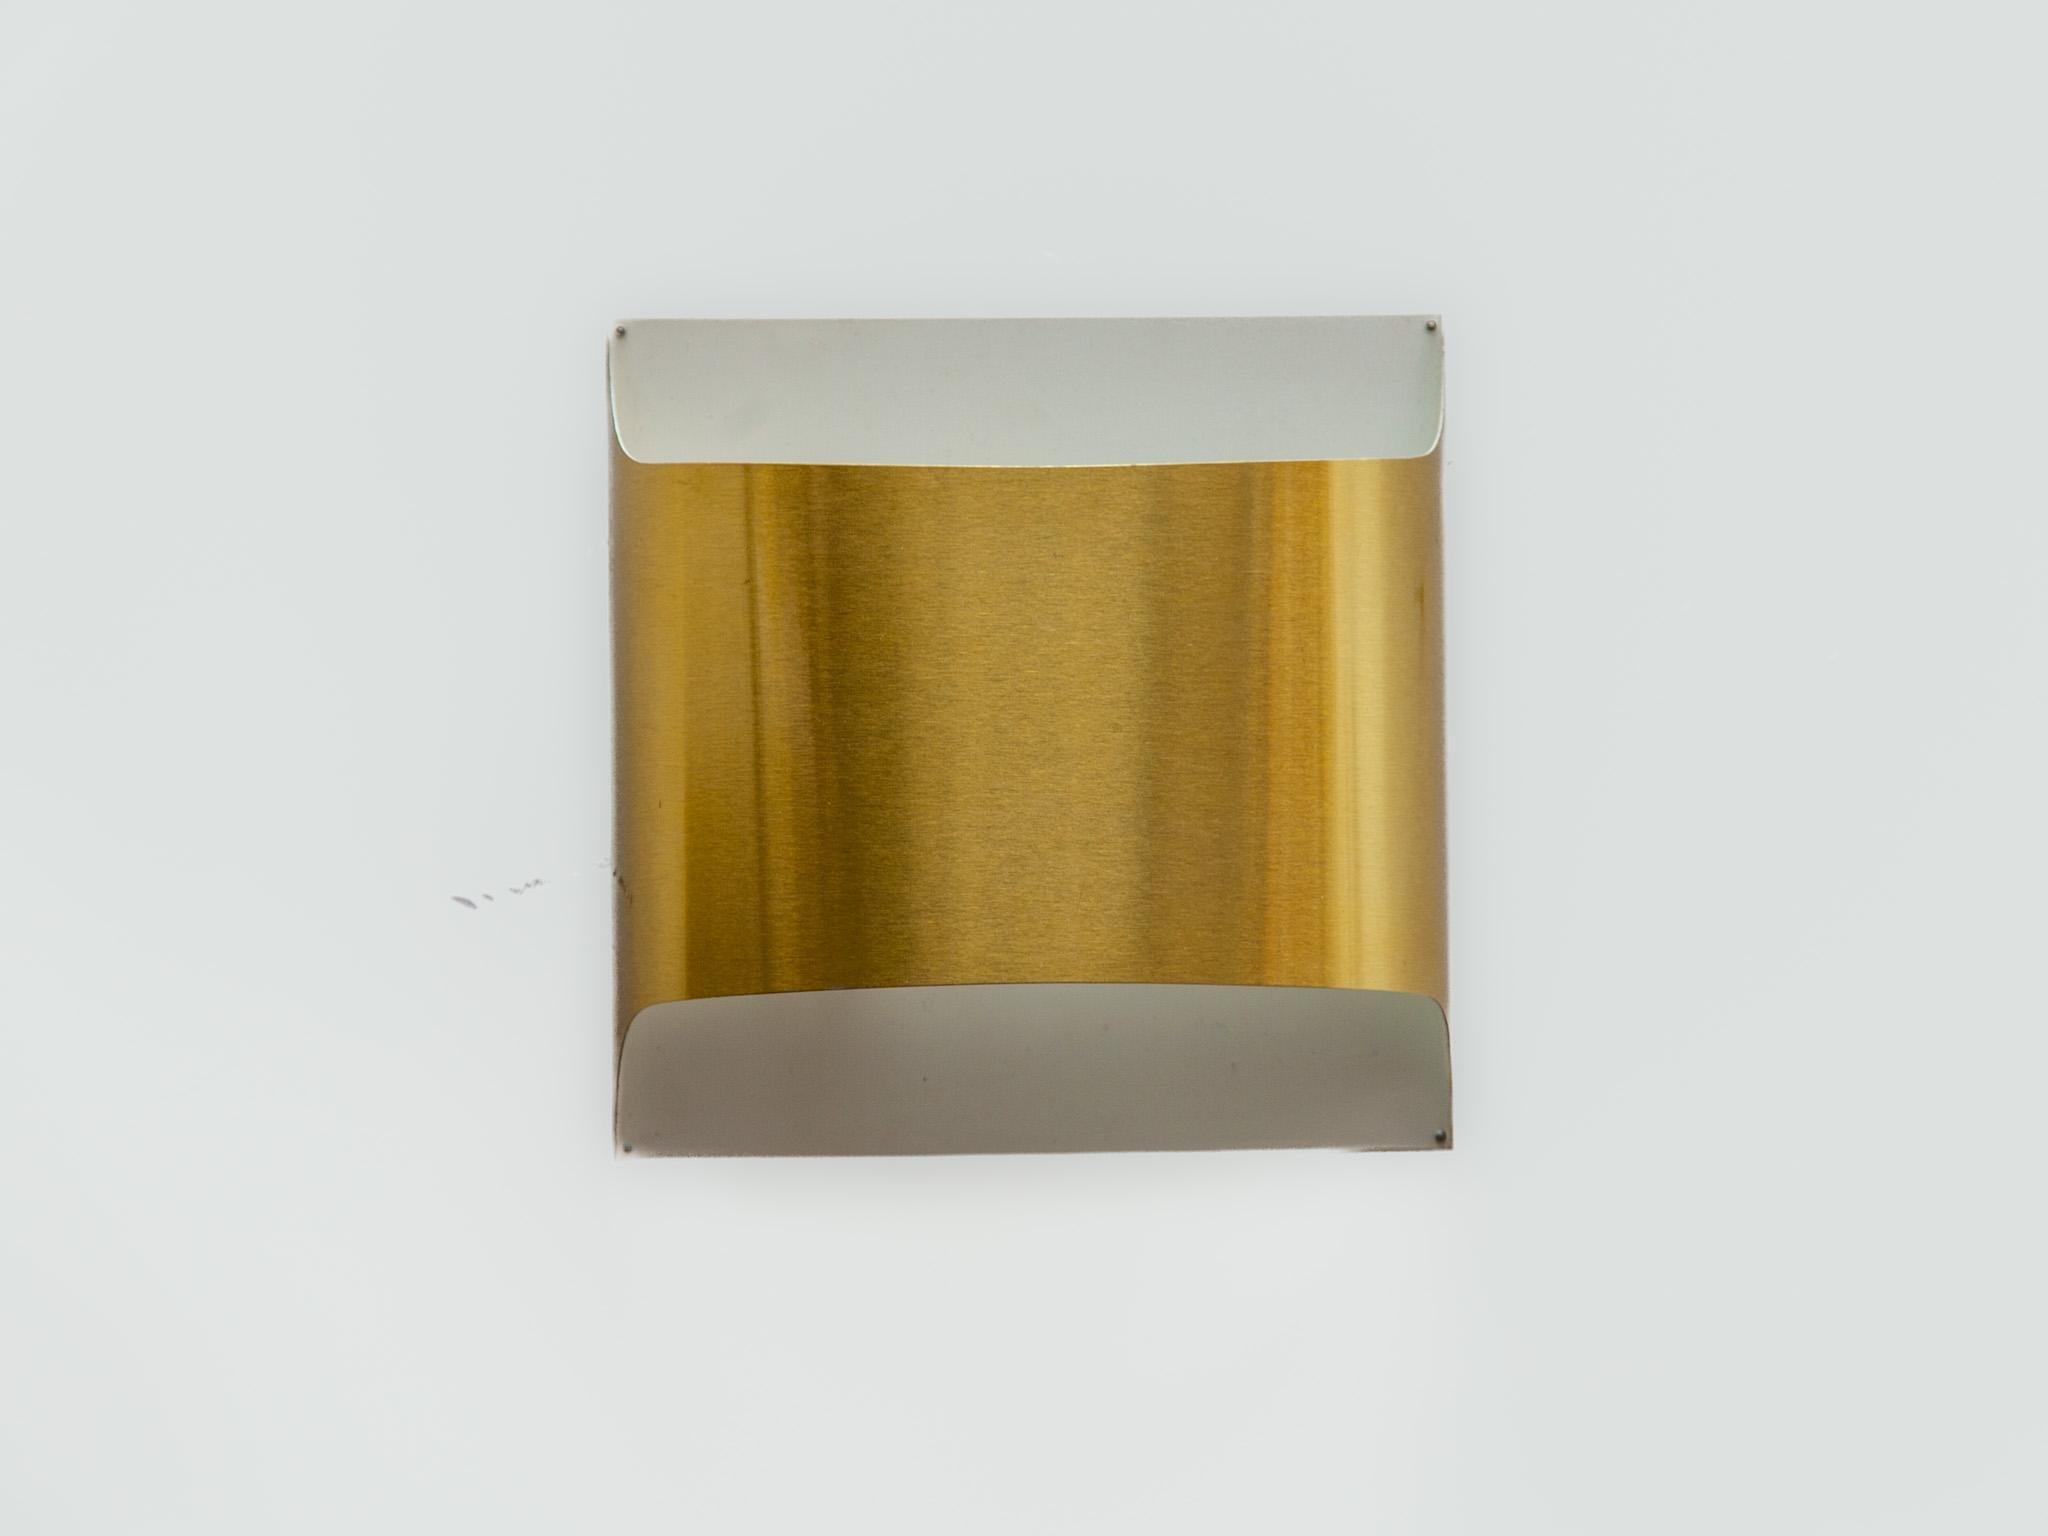 Zwei architektonische Wandleuchten im minimalistischen, modernen Design der 1970er Jahre aus goldfarbenem Metall, entworfen von Rolf Krüger und Dieter Witte für die Manufaktur STAFF Leuchten, Deutschland.
Die Wandleuchten sind so konzipiert, dass